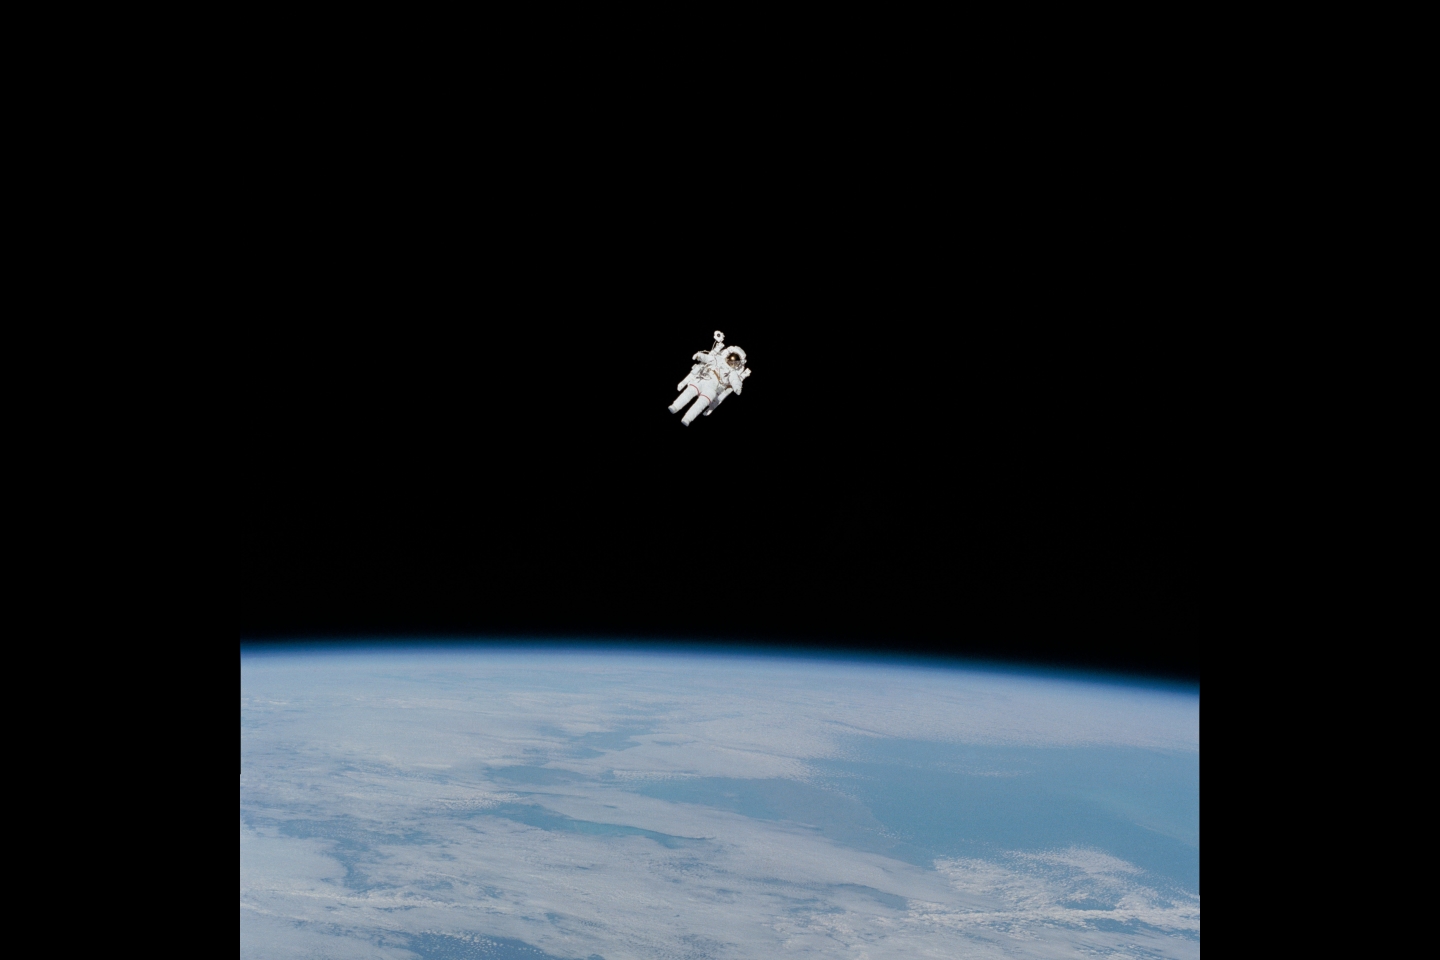 В течение 50 лет НАСА занималой «подгонкой» всего для выхода в открытый космос.. В этой фотографии 1984 года, посвященной первому выходу в открытый космос, астронавт НАСА Брюс Маккандлесс находится в центре первого «полевого» испытания реактивного рюкзака с азотом под названием «Manned Maneuvering Unit» (MMU).